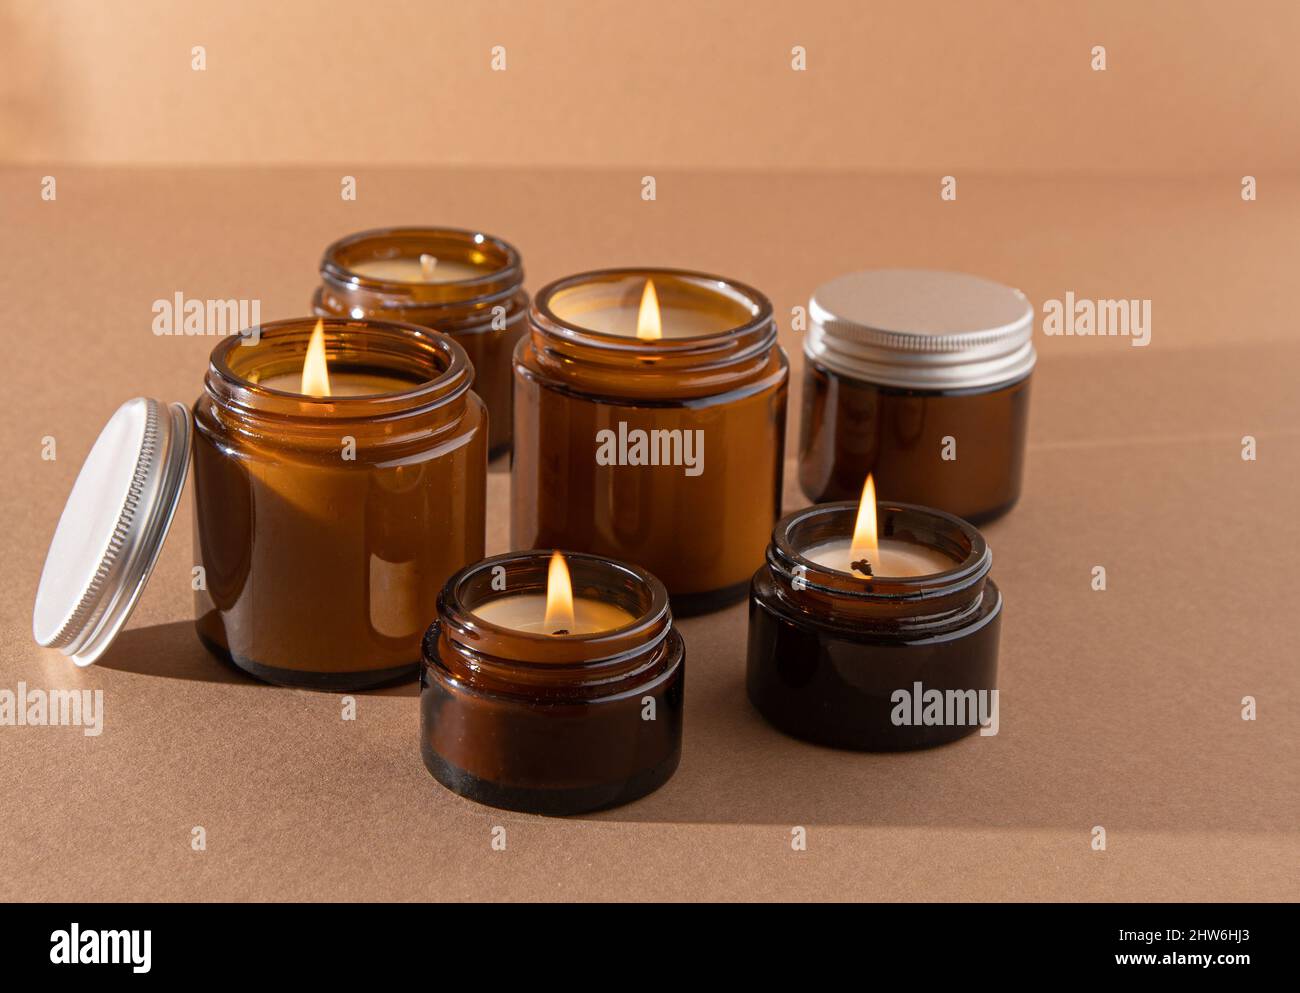 Un set di candele aromatiche diverse in vasetti di vetro marrone. Candela  profumata fatta a mano. Le candele di soia stanno bruciando in un vaso.  Aromaterapia e relax in spa e casa